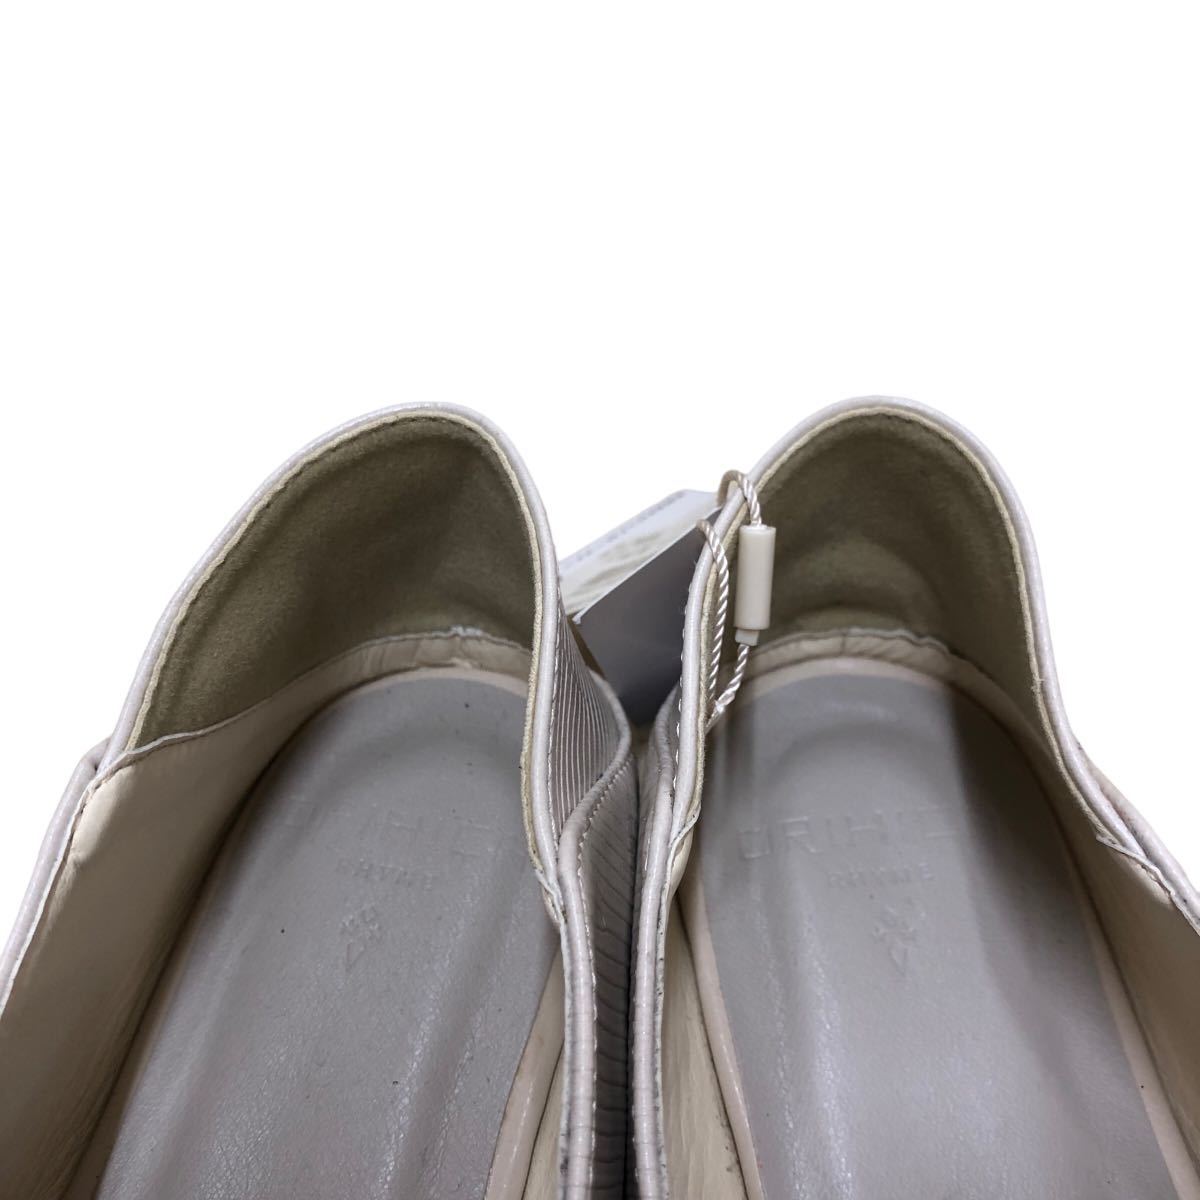 AJ284 не использовался женский bit Loafer туфли-лодочки S примерно 22.5cm ~ 23cm бежевый кожзаменитель 